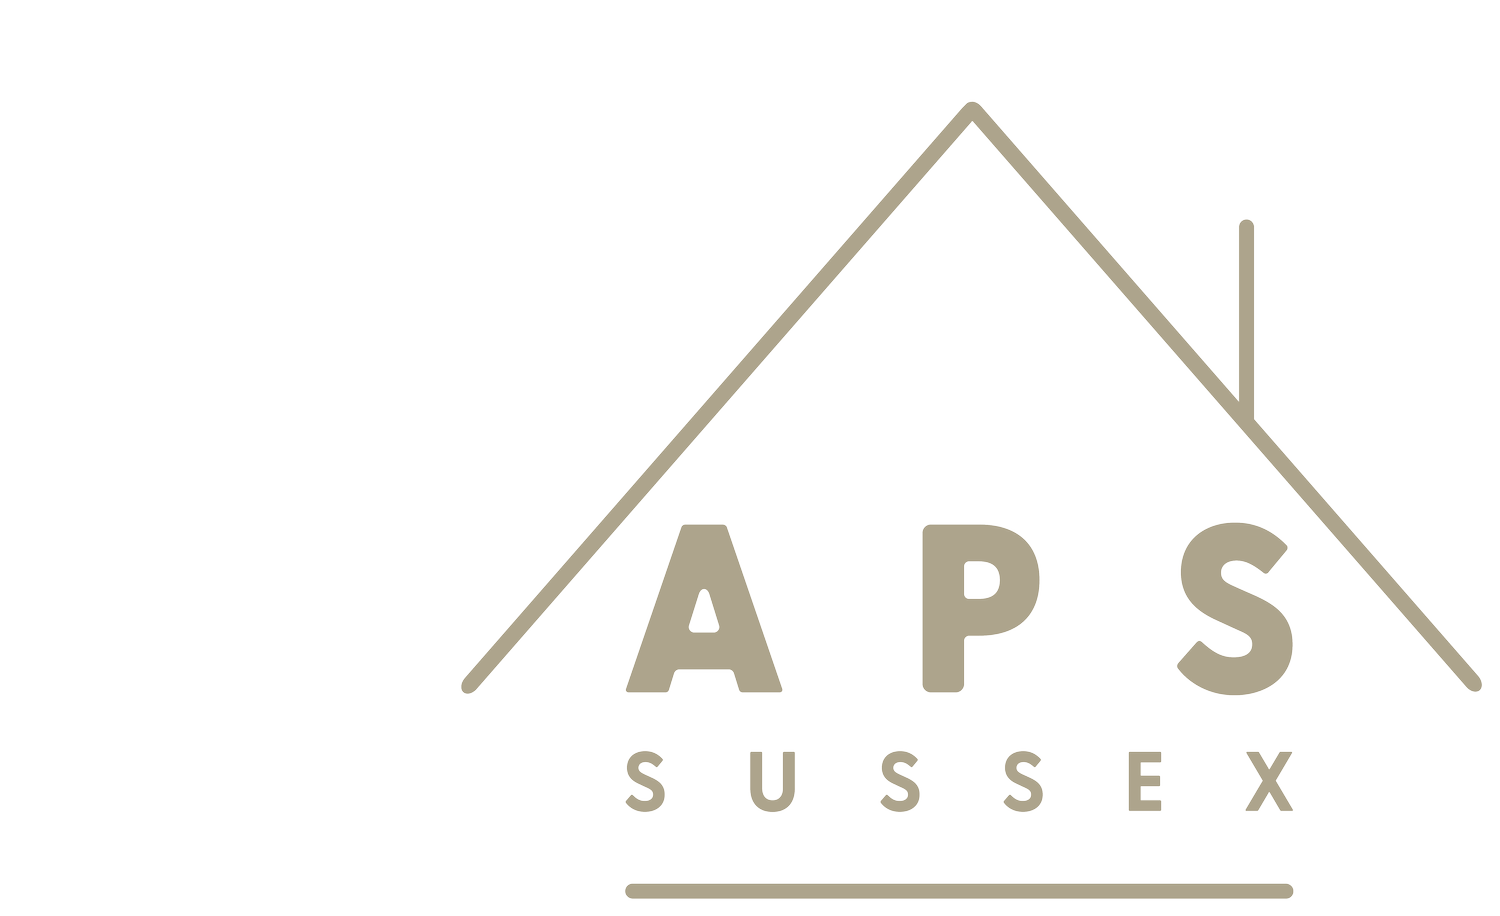 APS Sussex